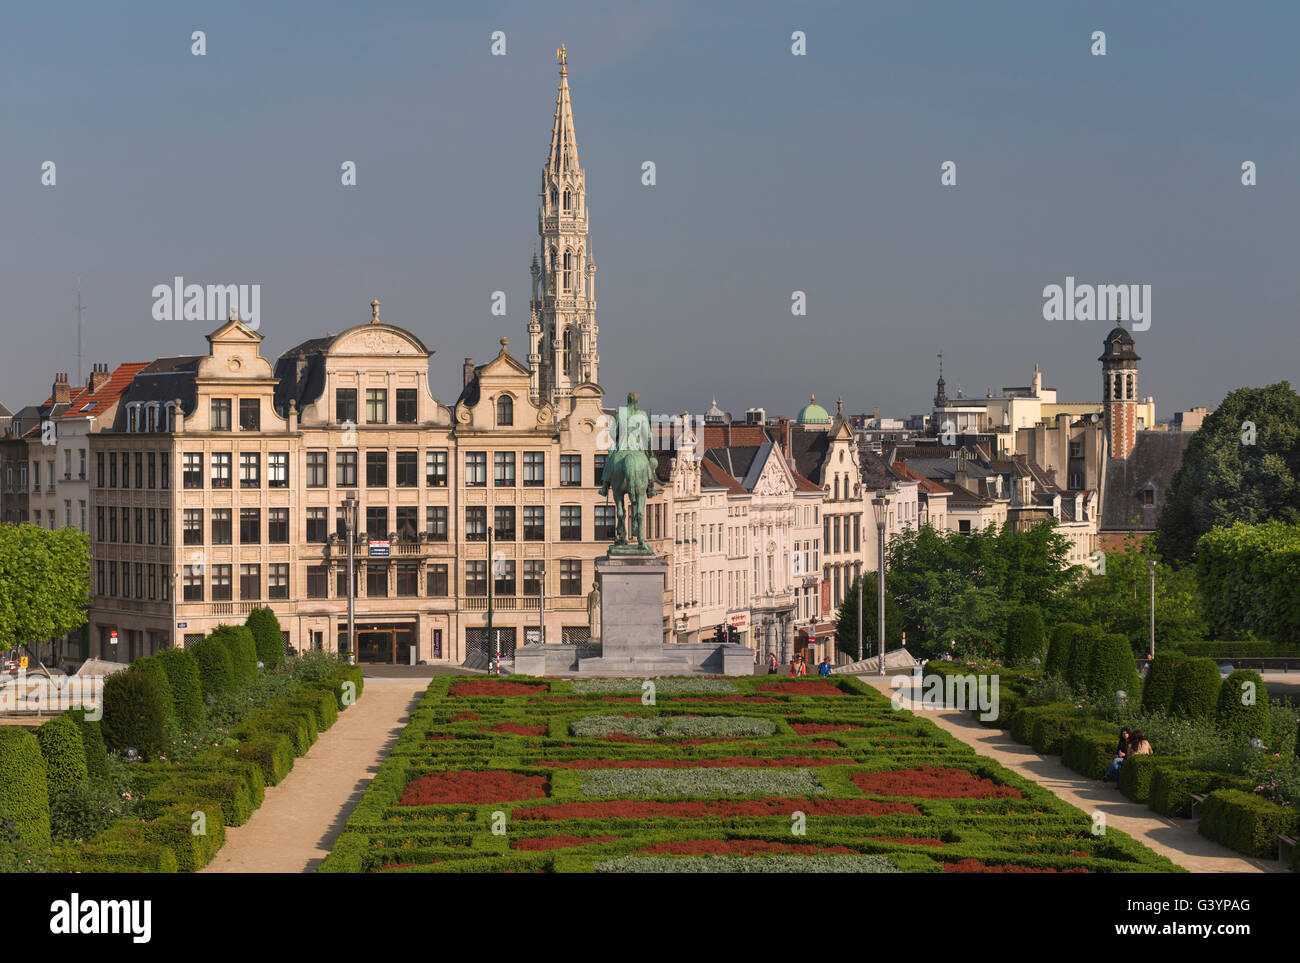 City view Mont des Arts Brussels Belgium Stock Photo